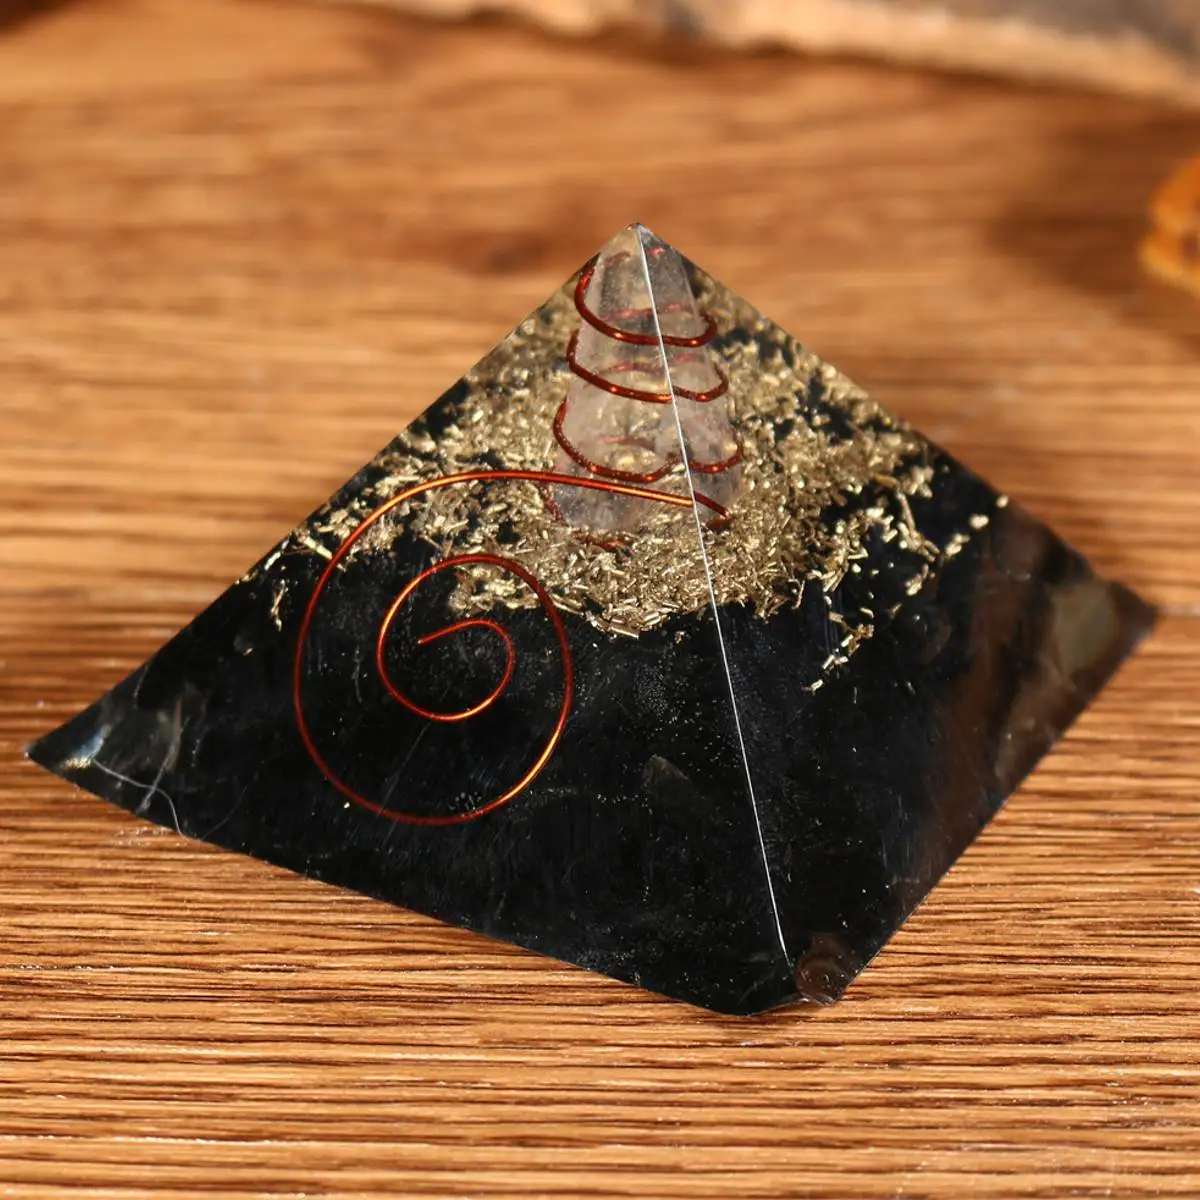 70-75 мм Натуральная пирамида из кристалла кварца драгоценный камень фэн-шуй Йога энергетический лечебный камень домашний сад ремесло украшение Новинка